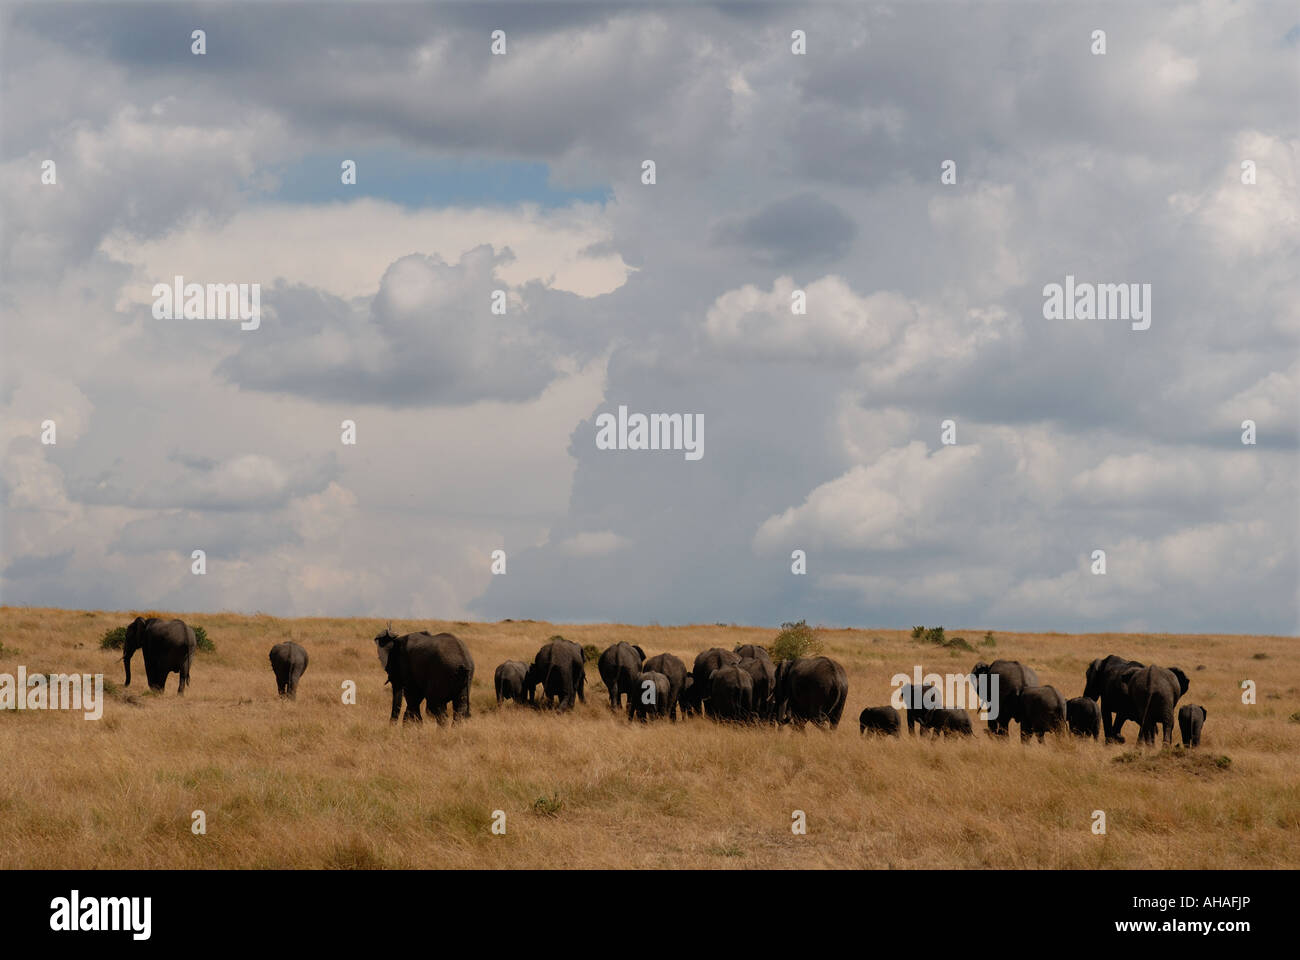 Elefantenherde mit einer langen Reihe von Weibchen und Waden breasting einen grasbewachsenen Anstieg in der Masai Mara National Reserve Kenia Osten Afric Stockfoto